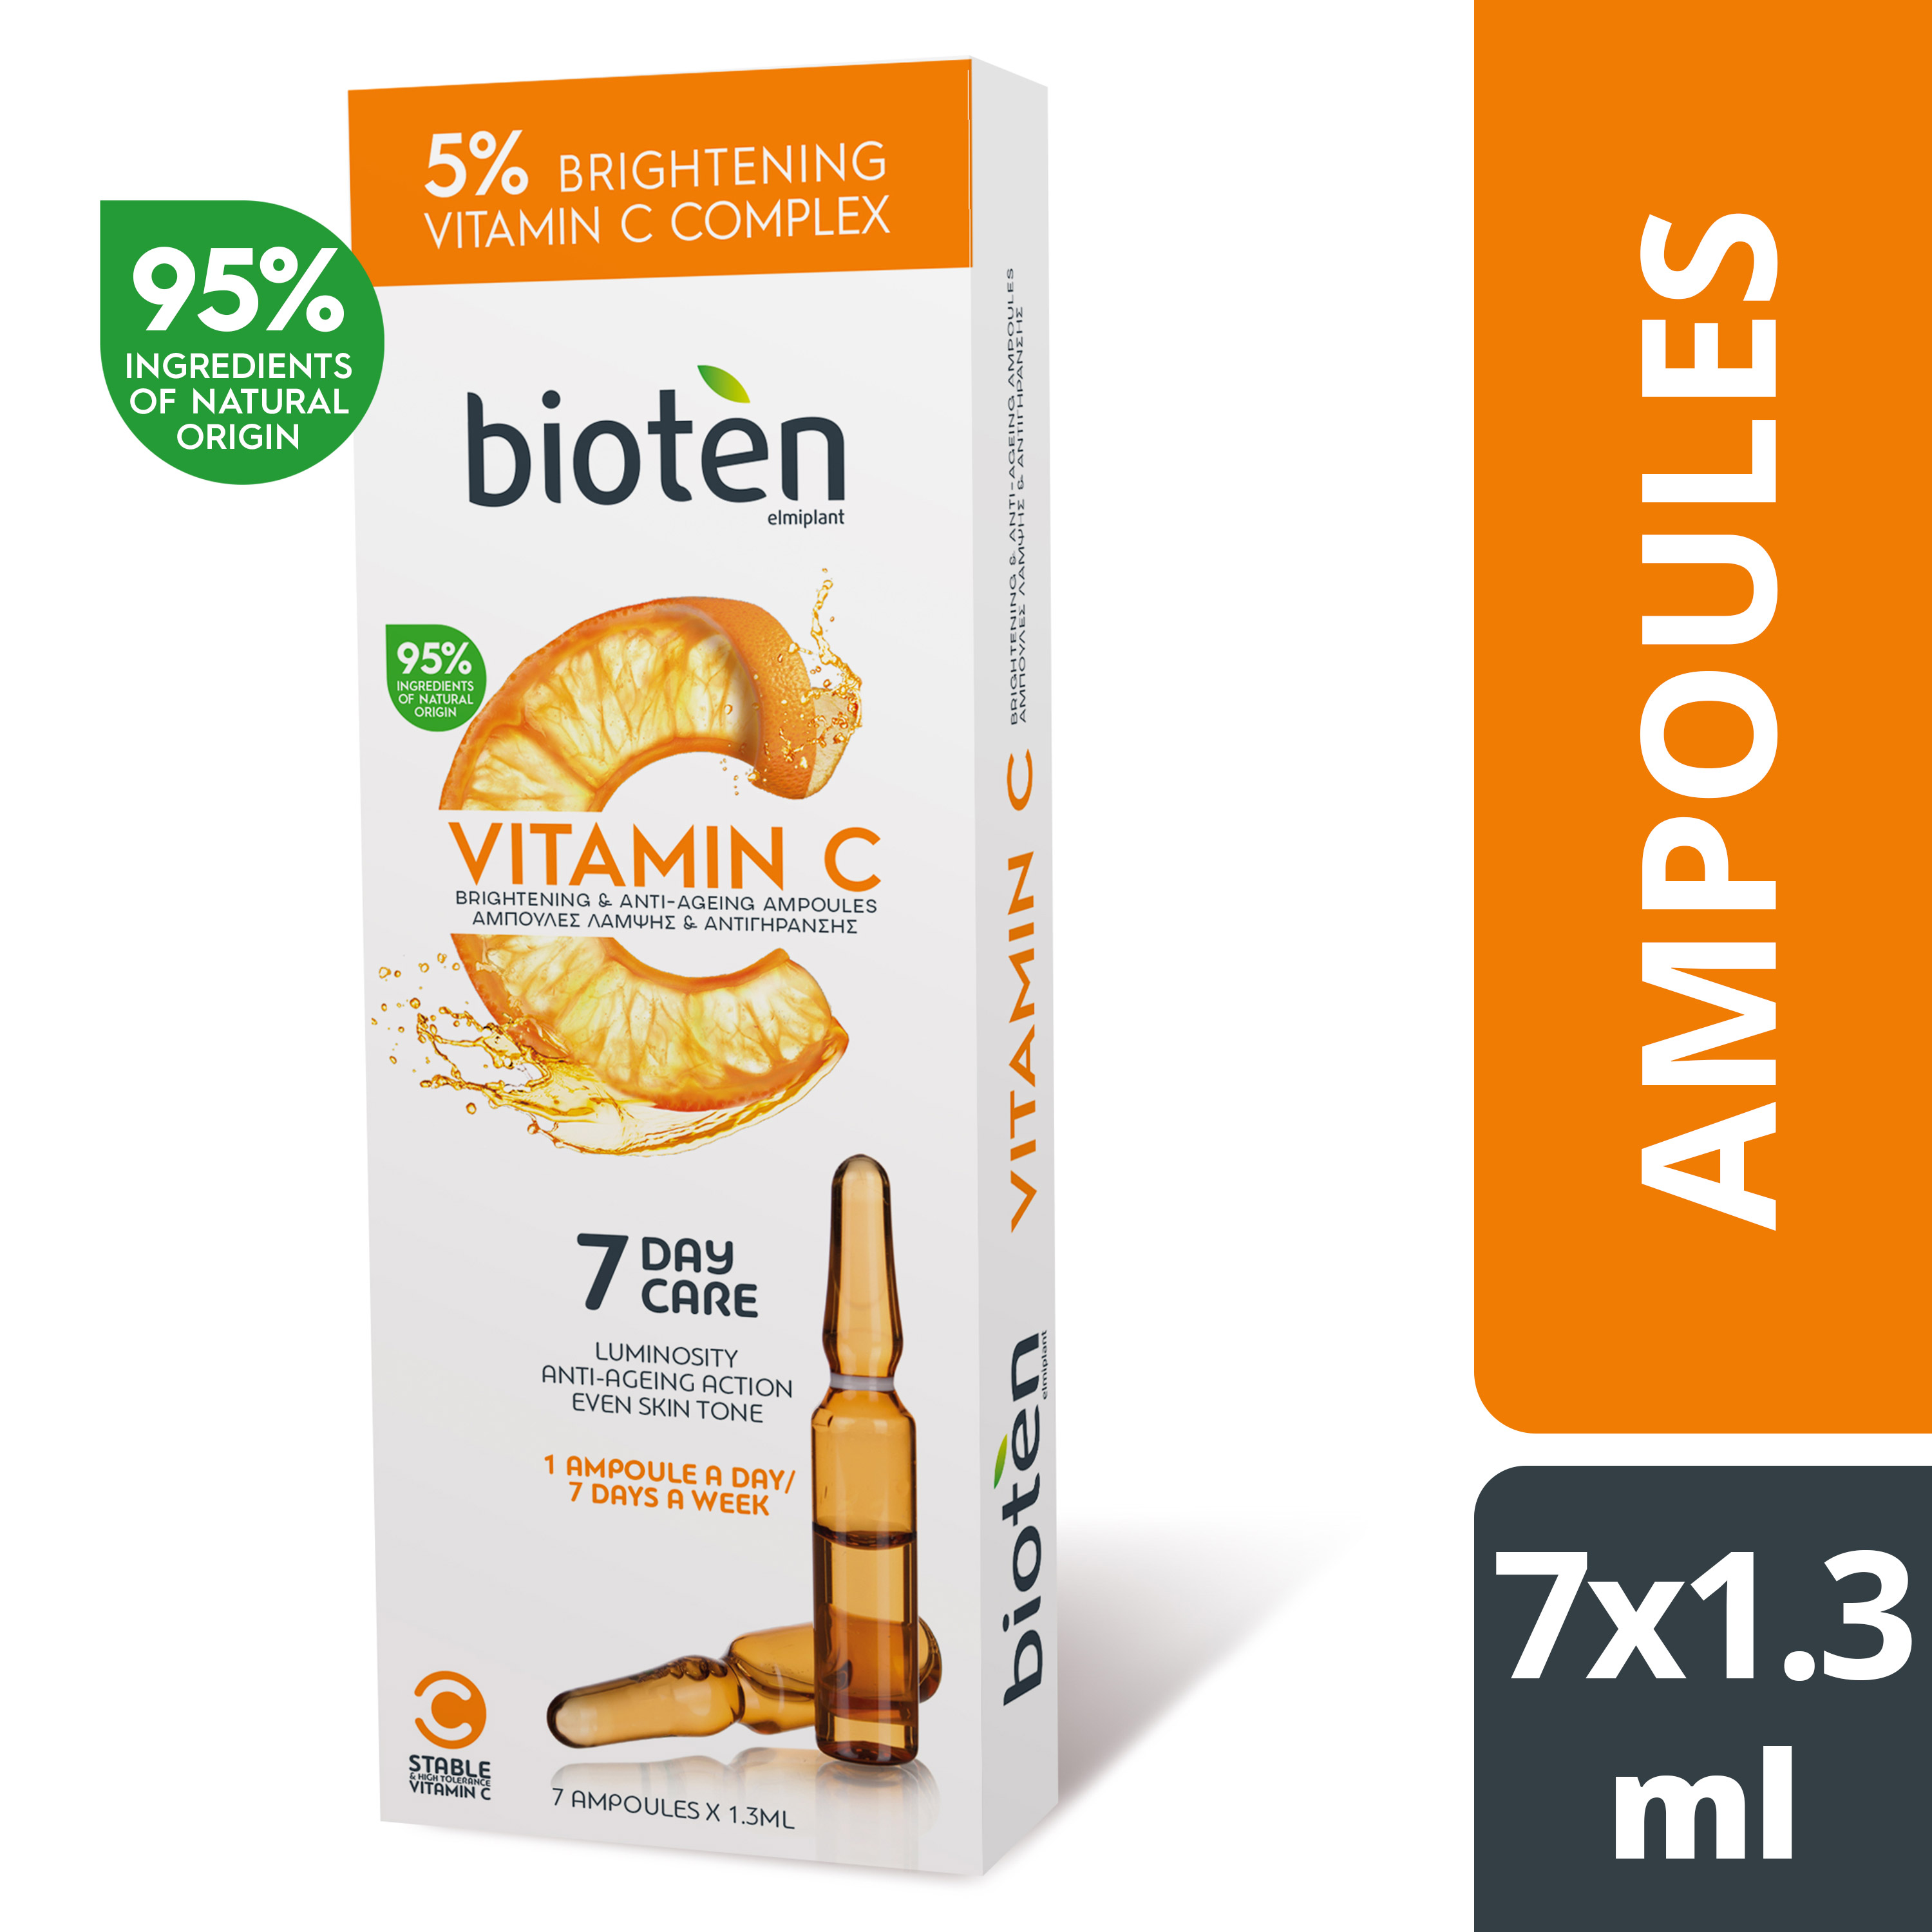 brightening anti ageing serum vitamin c bioten 7x1 3ml